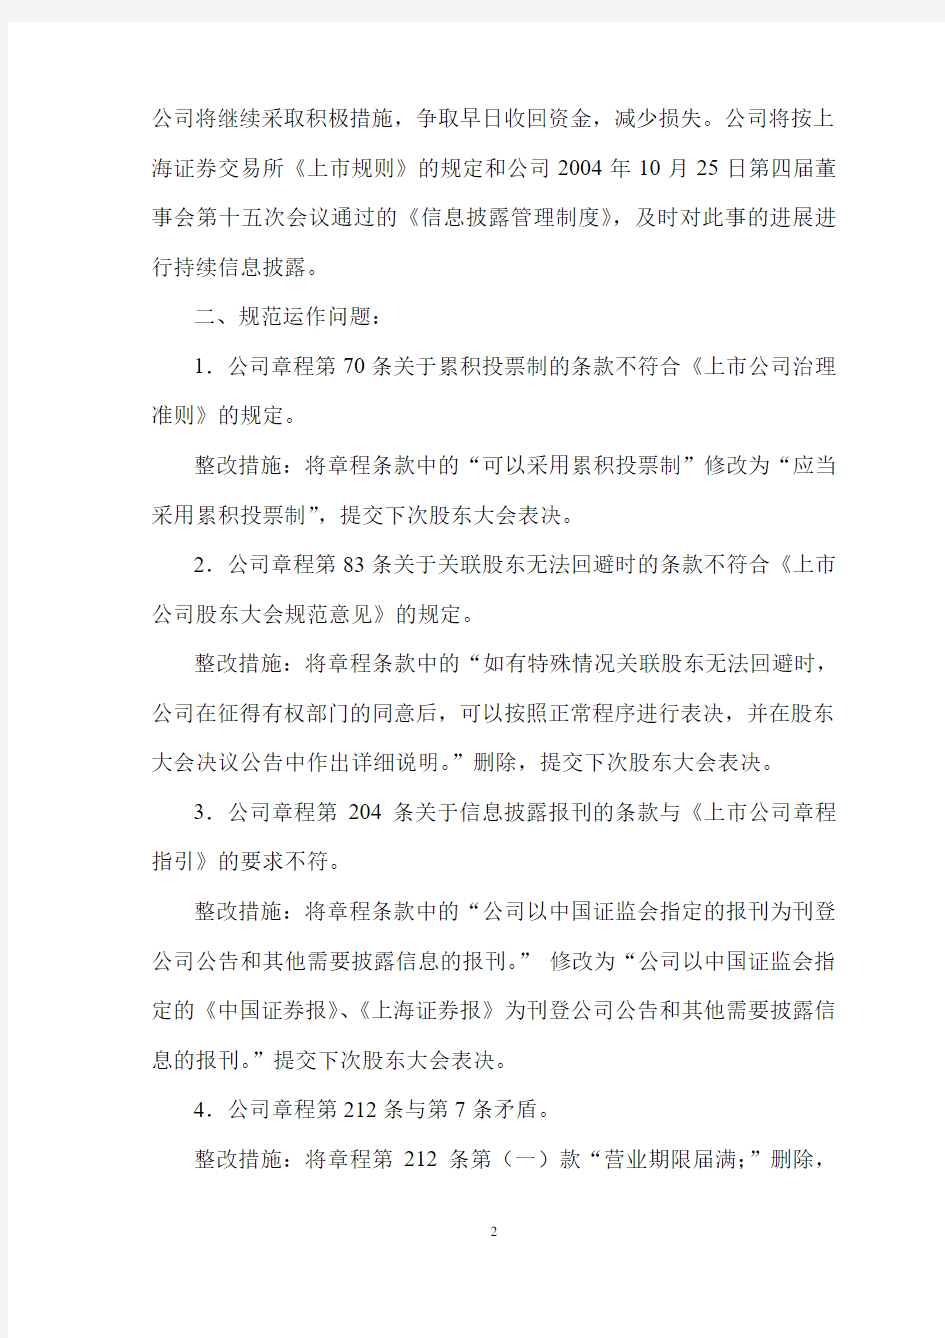 关于中国证监会山东证监局《整改通知》的整改报告的公告